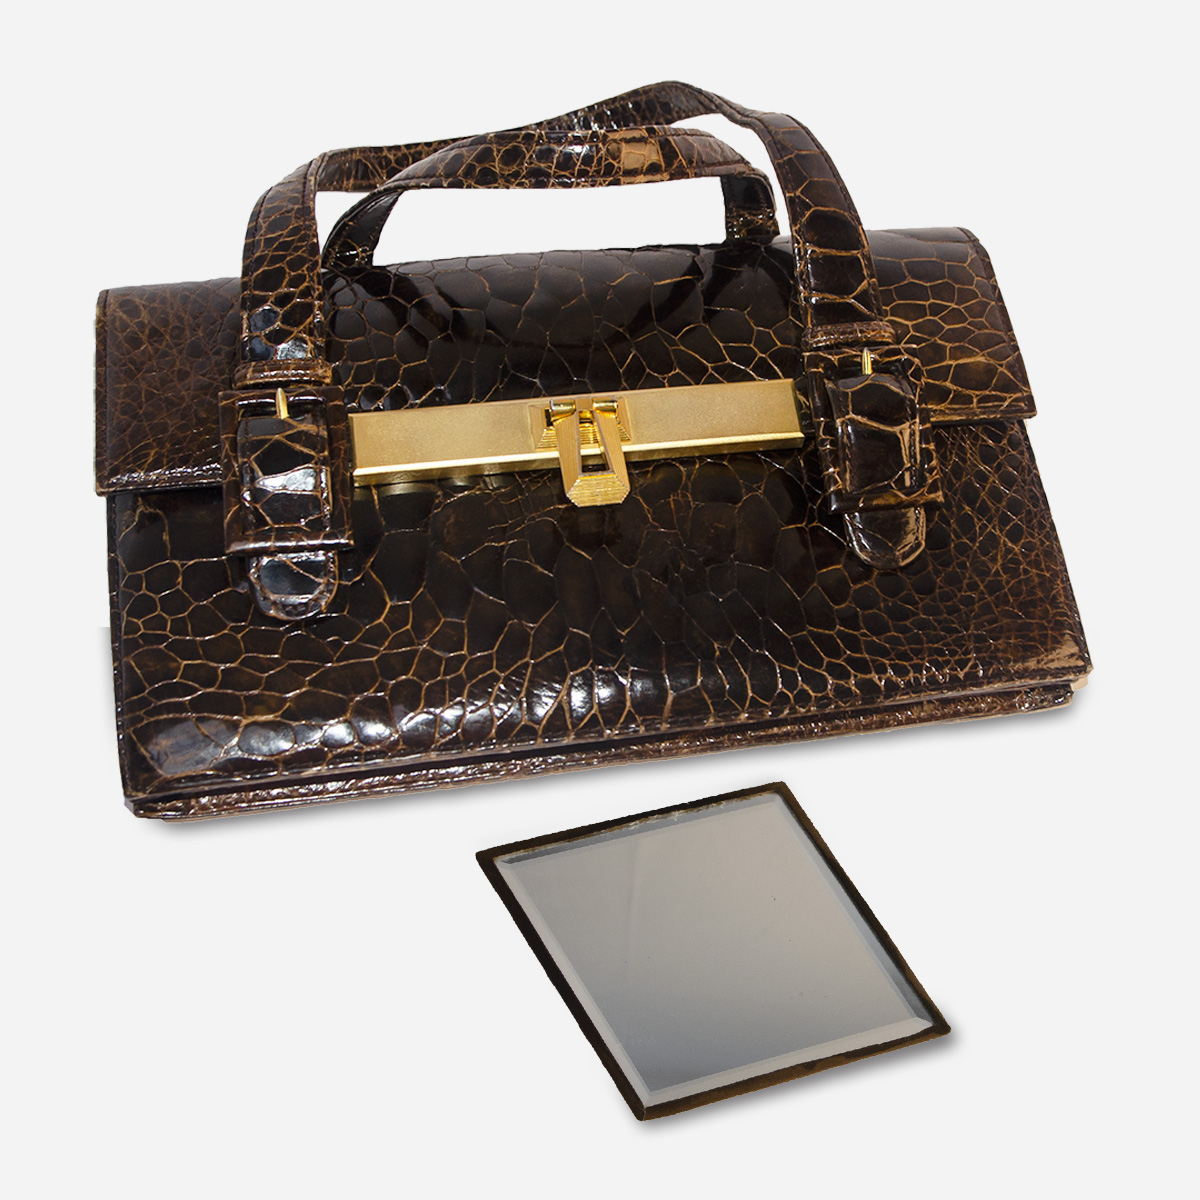 Vintage brown handbag with mirror